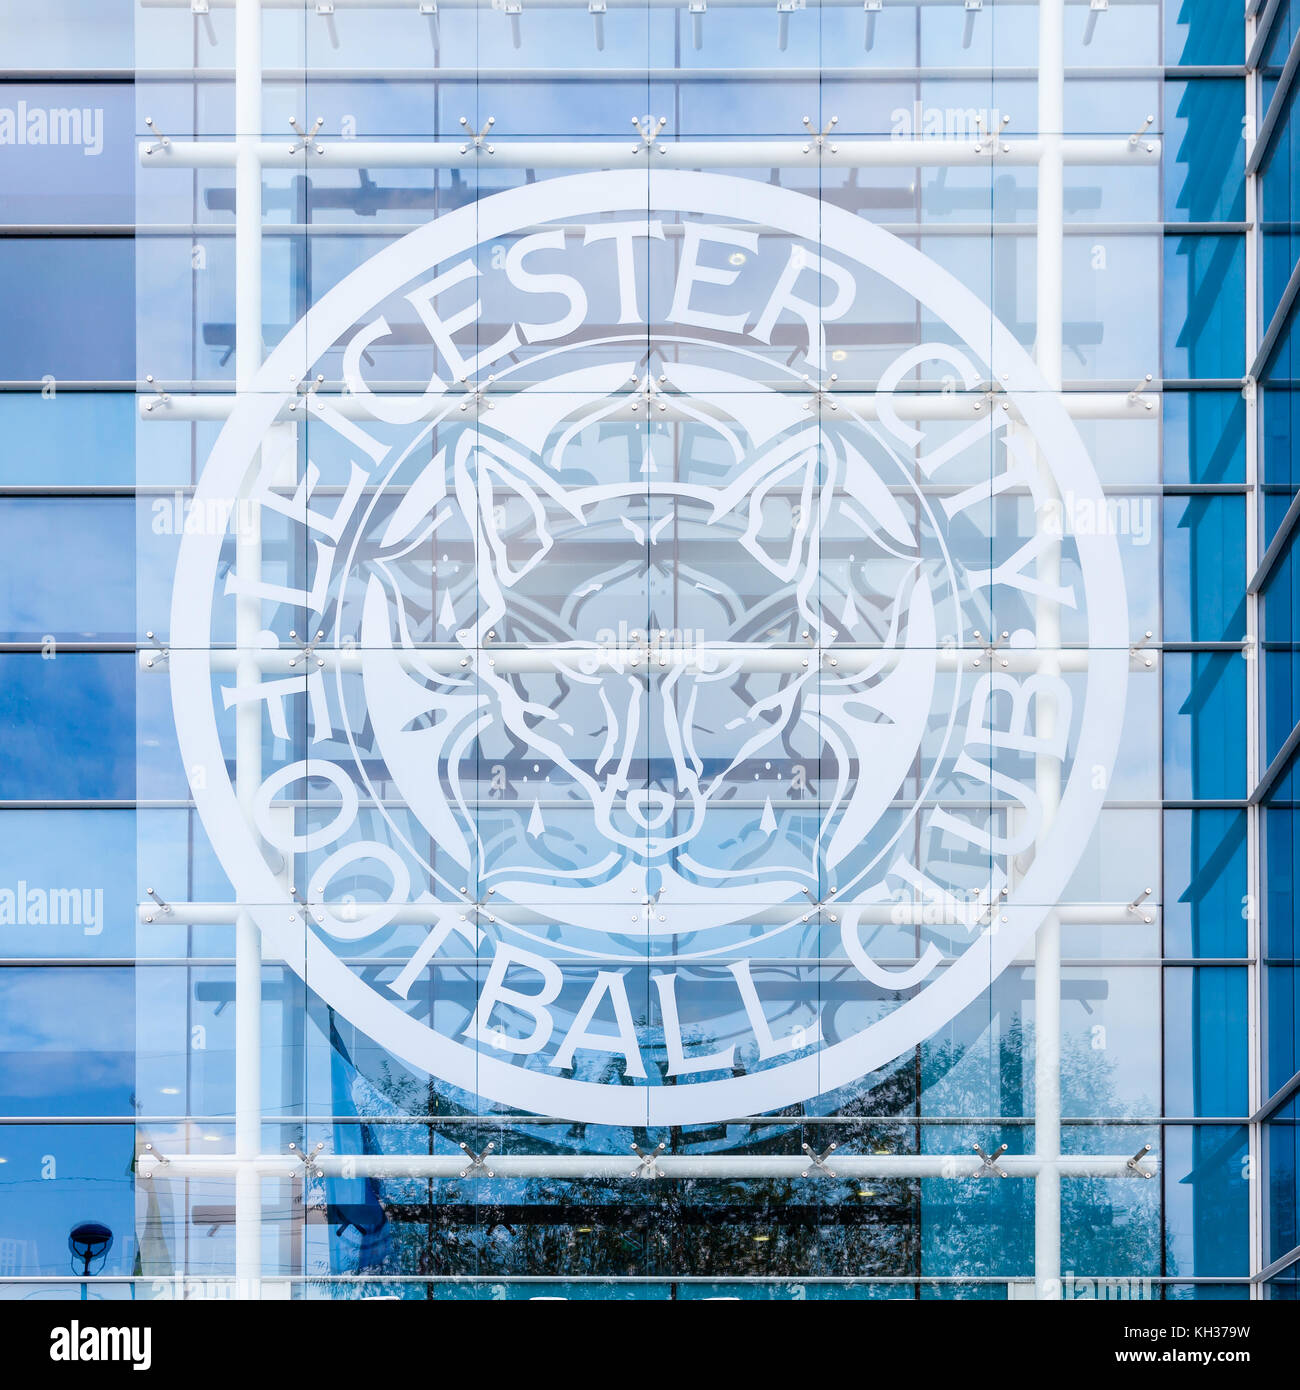 La ville de Leicester orne le badge King Power stadium en Angleterre. Le stade abrite le club de football de Leicester City. Banque D'Images